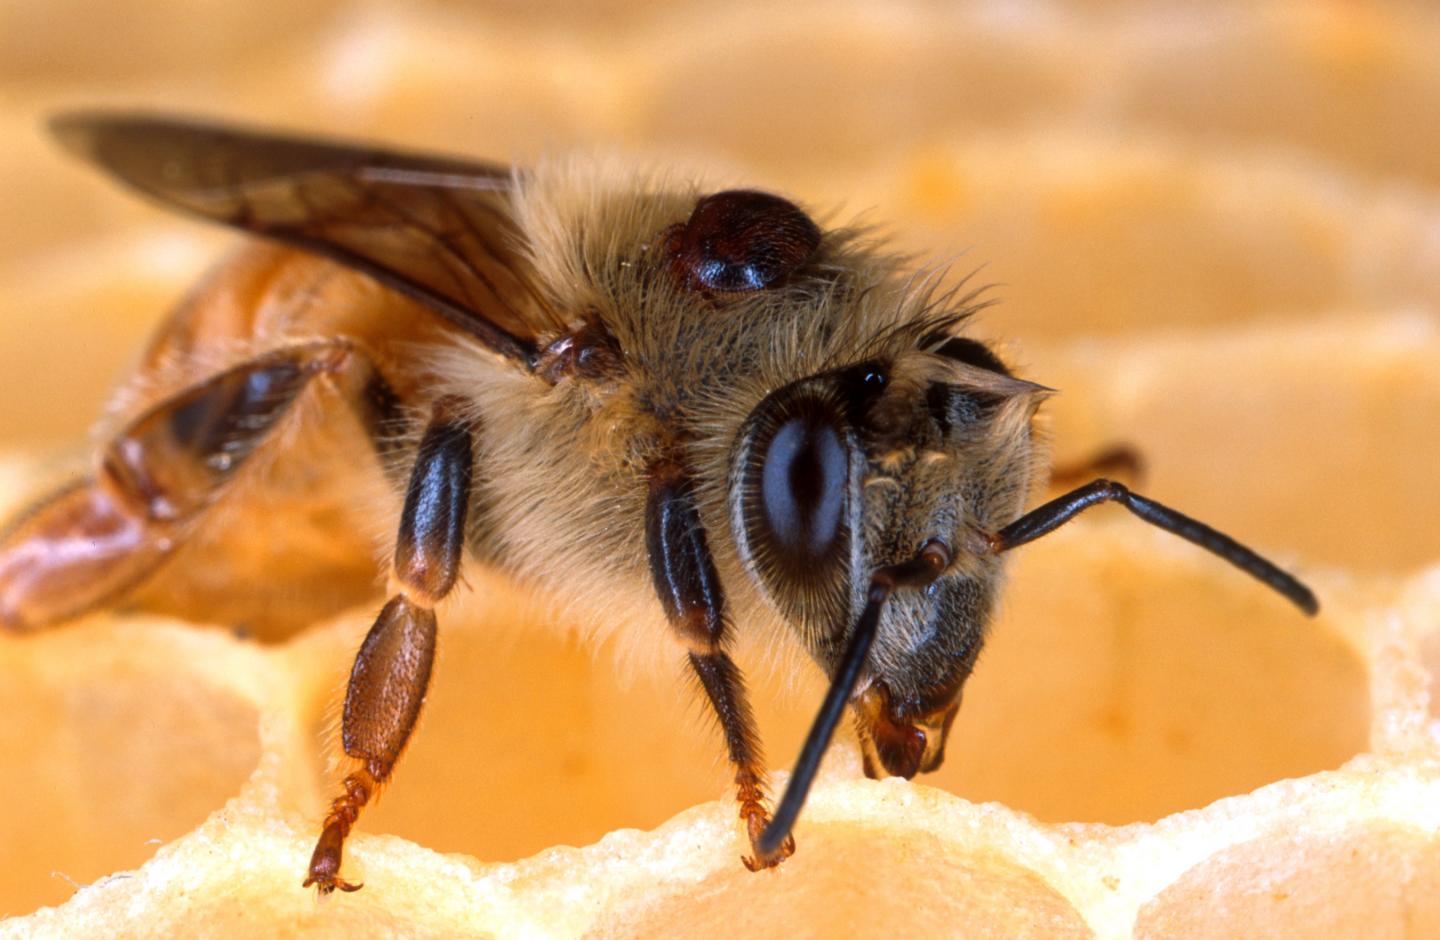 Varroa mite on honey bee